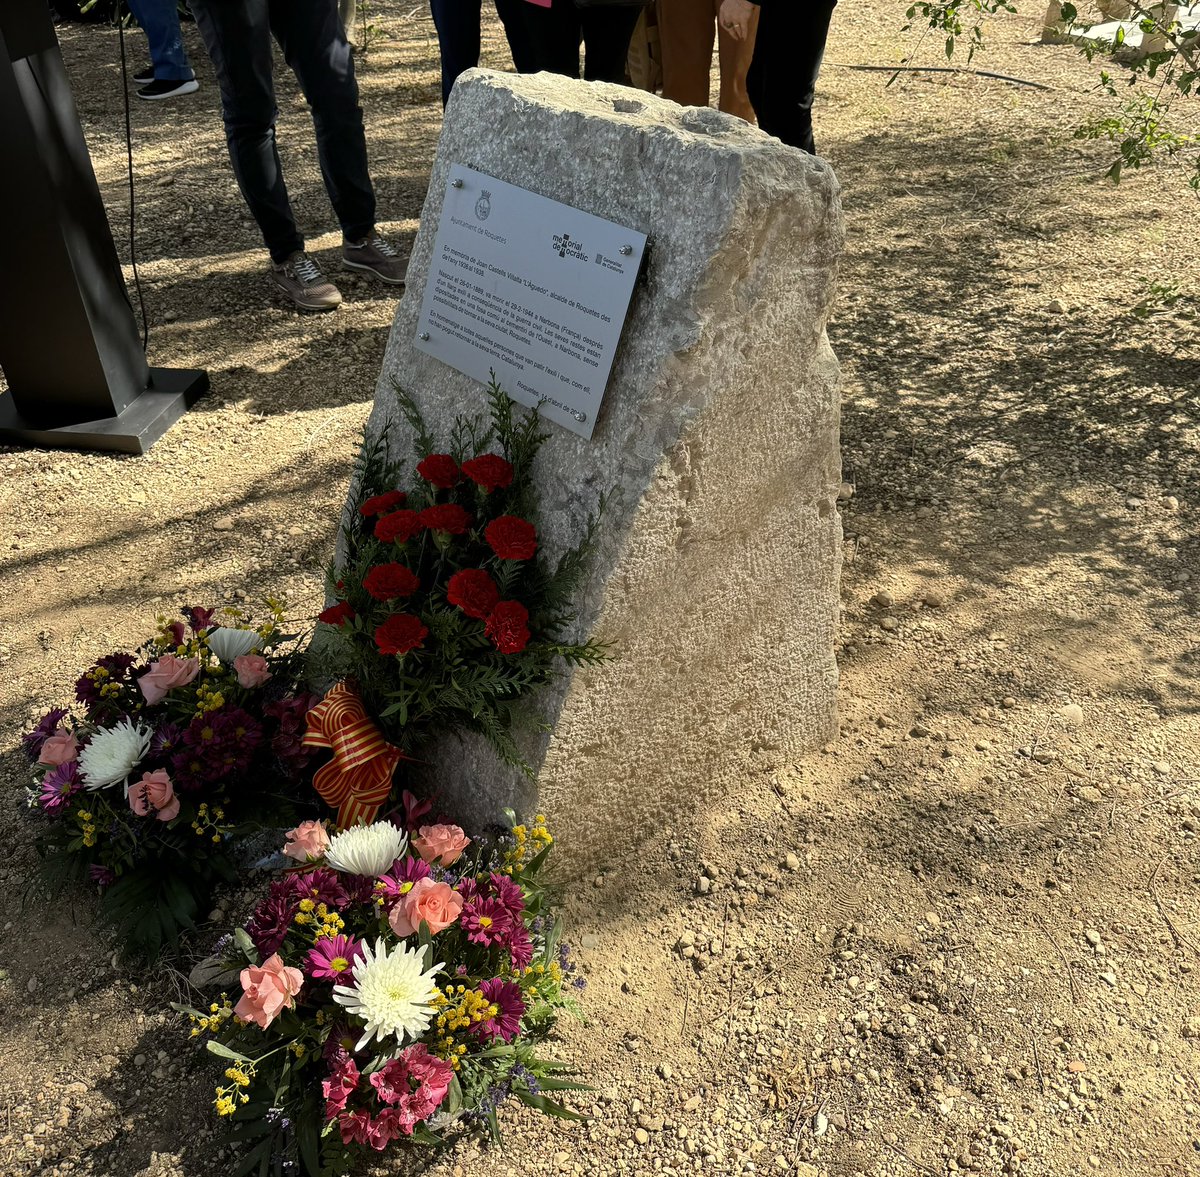 #Roquetes celebra avui el 174 aniversari de la seva independència. I ho fa posant en valor el seu compromís amb la memòria democràtica i agraint el llegat de l’alcalde republicà Joan Castells, assassinat pel feixisme i enterrat a Narbona. No perdem mai la memòria! #republica